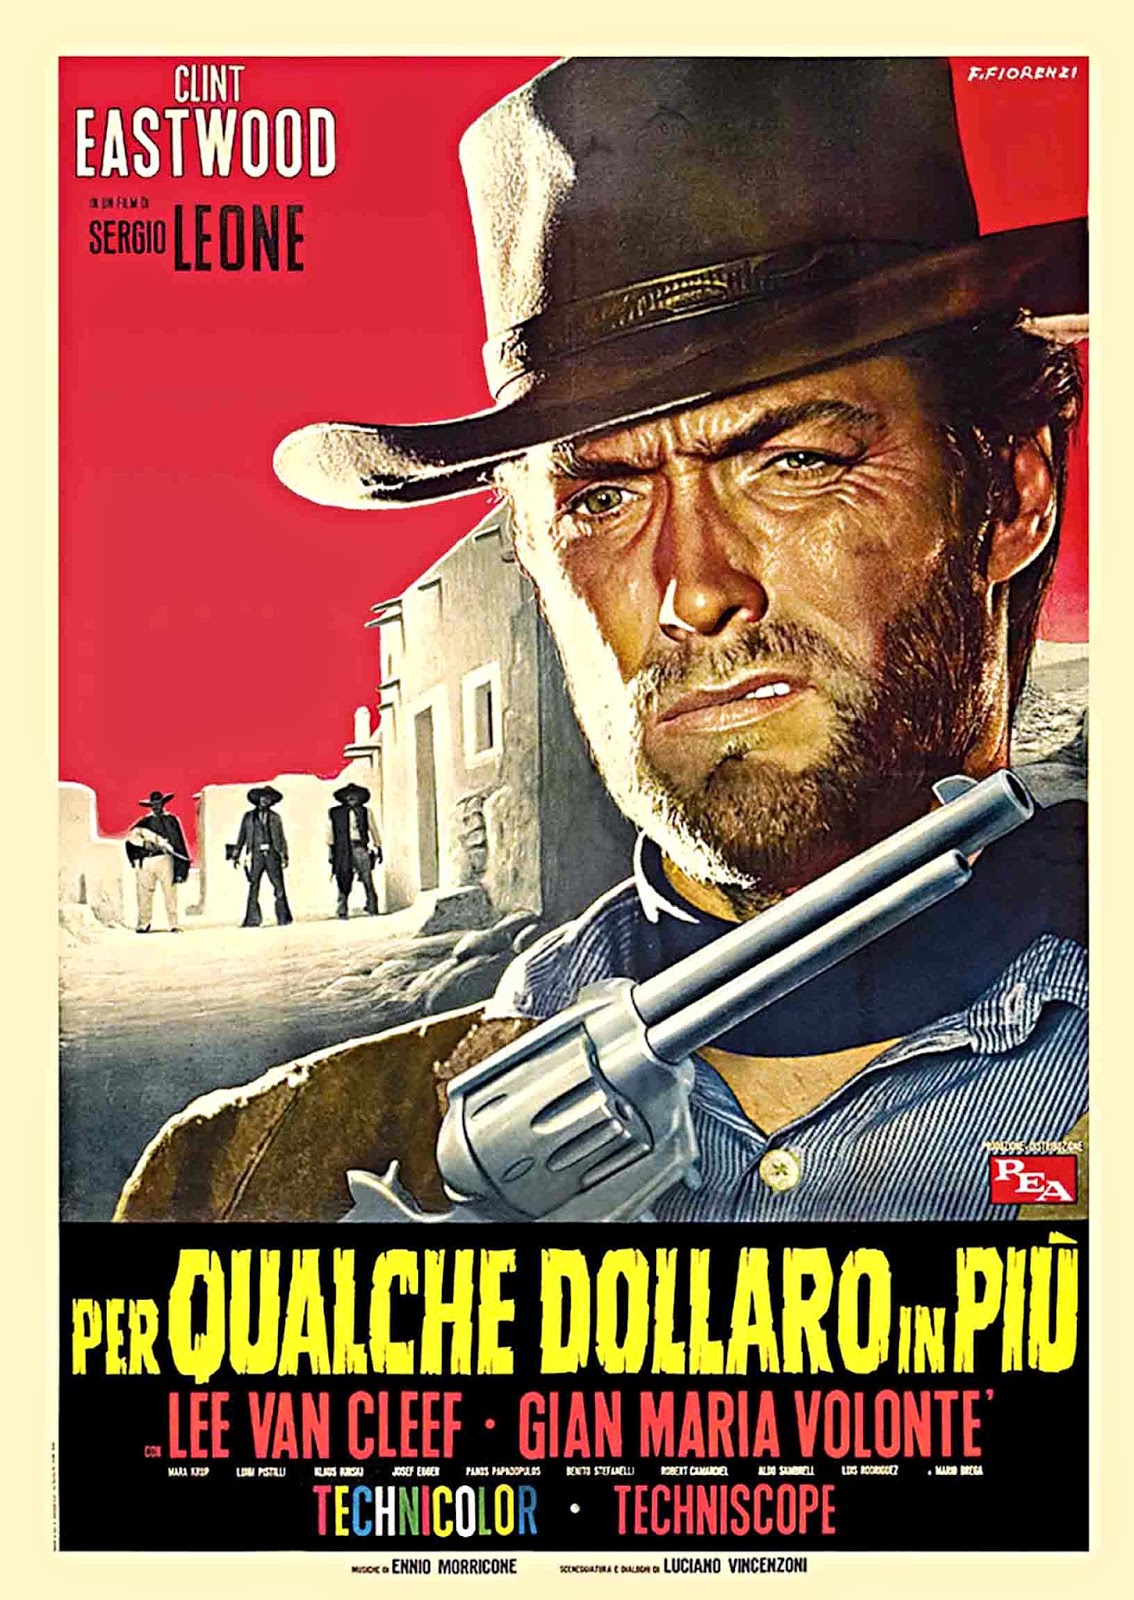 El Cinema de Hollywood: El western según Sergio Leone (II). Por Xavi López